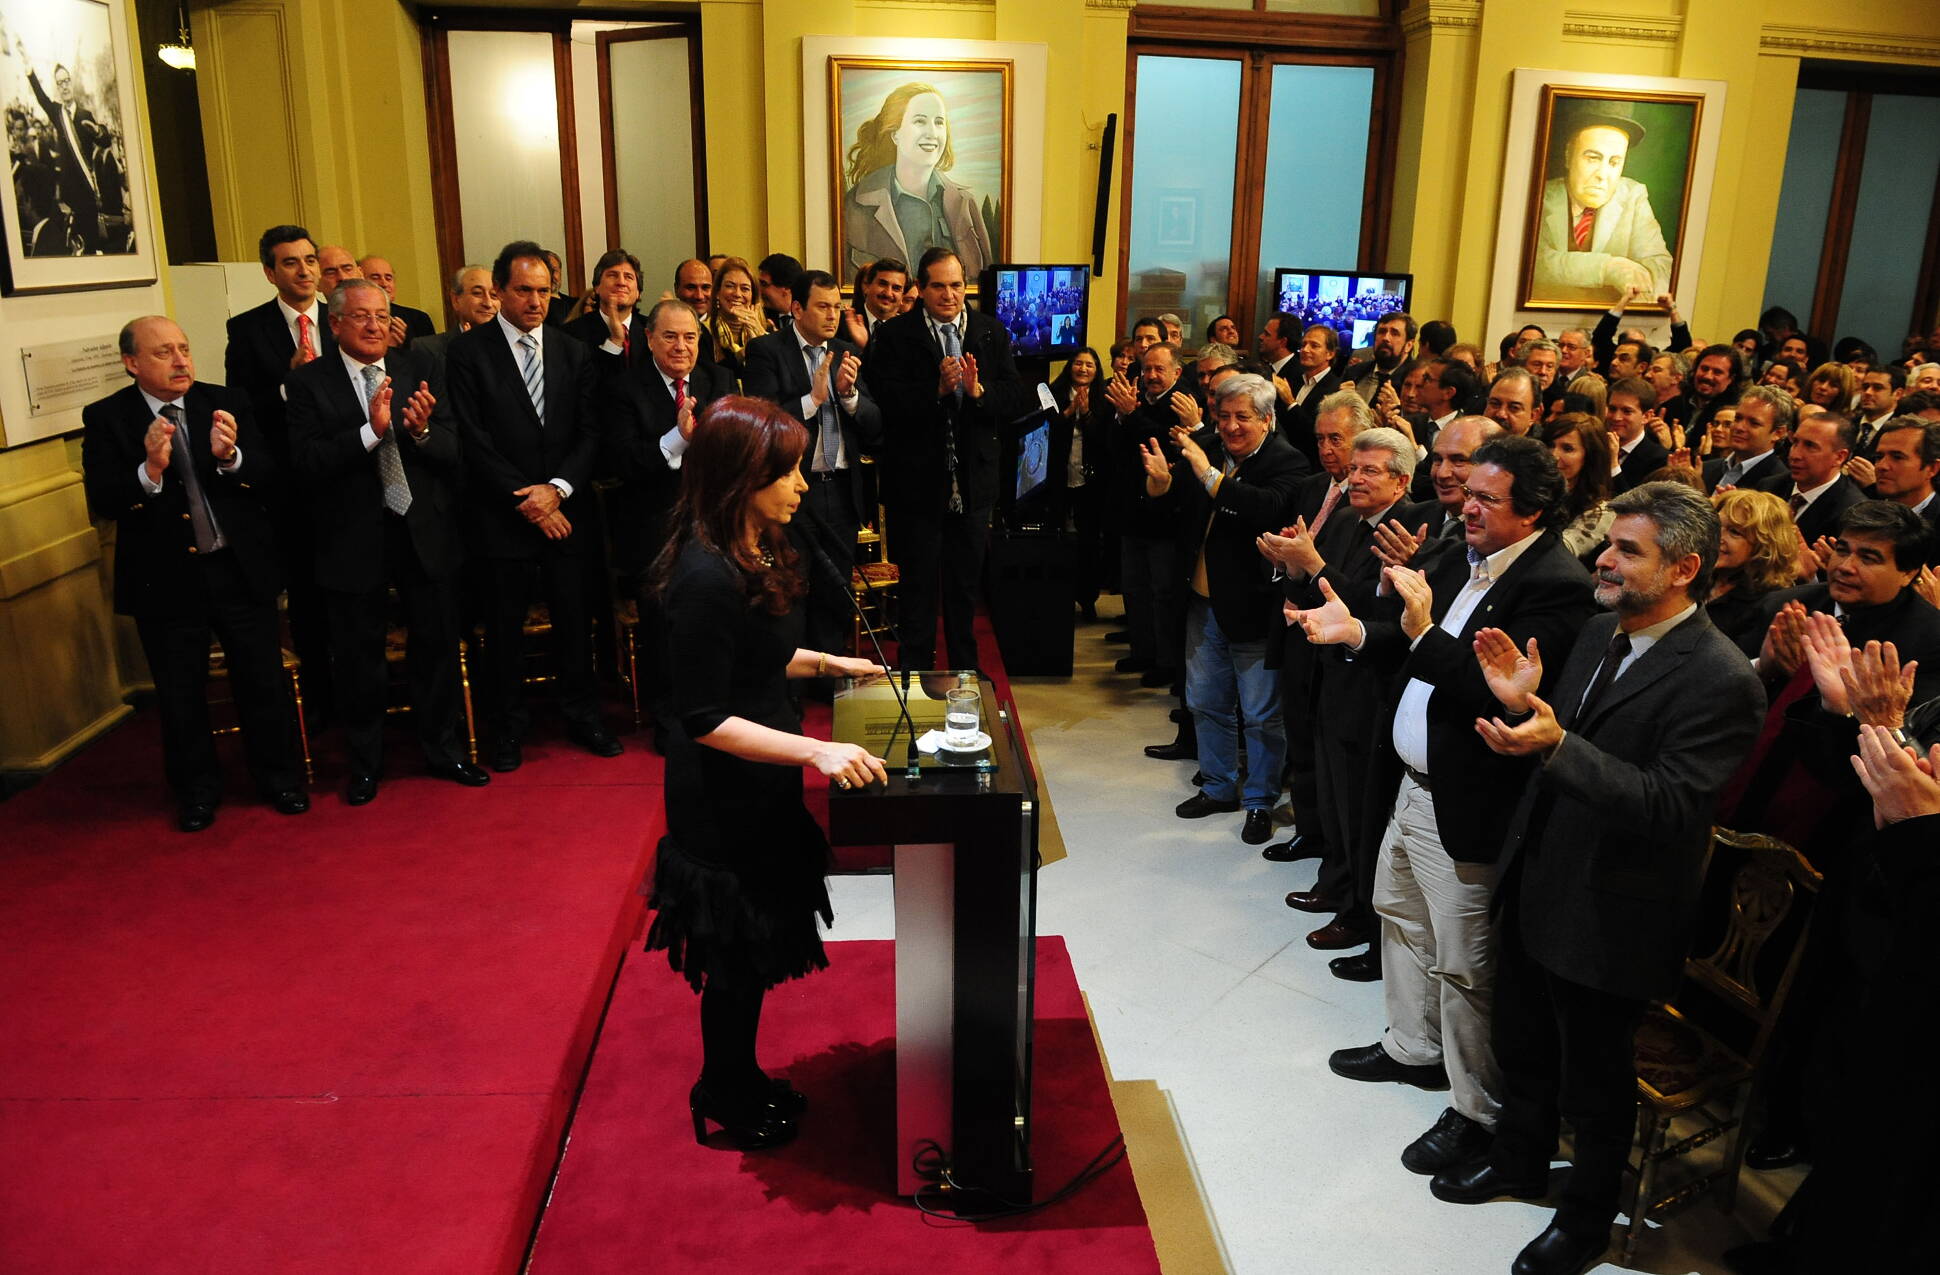 Cristina Fernández anunció que buscará su reelección: “Vamos a someternos una vez más” a la voluntad popular, aseguró